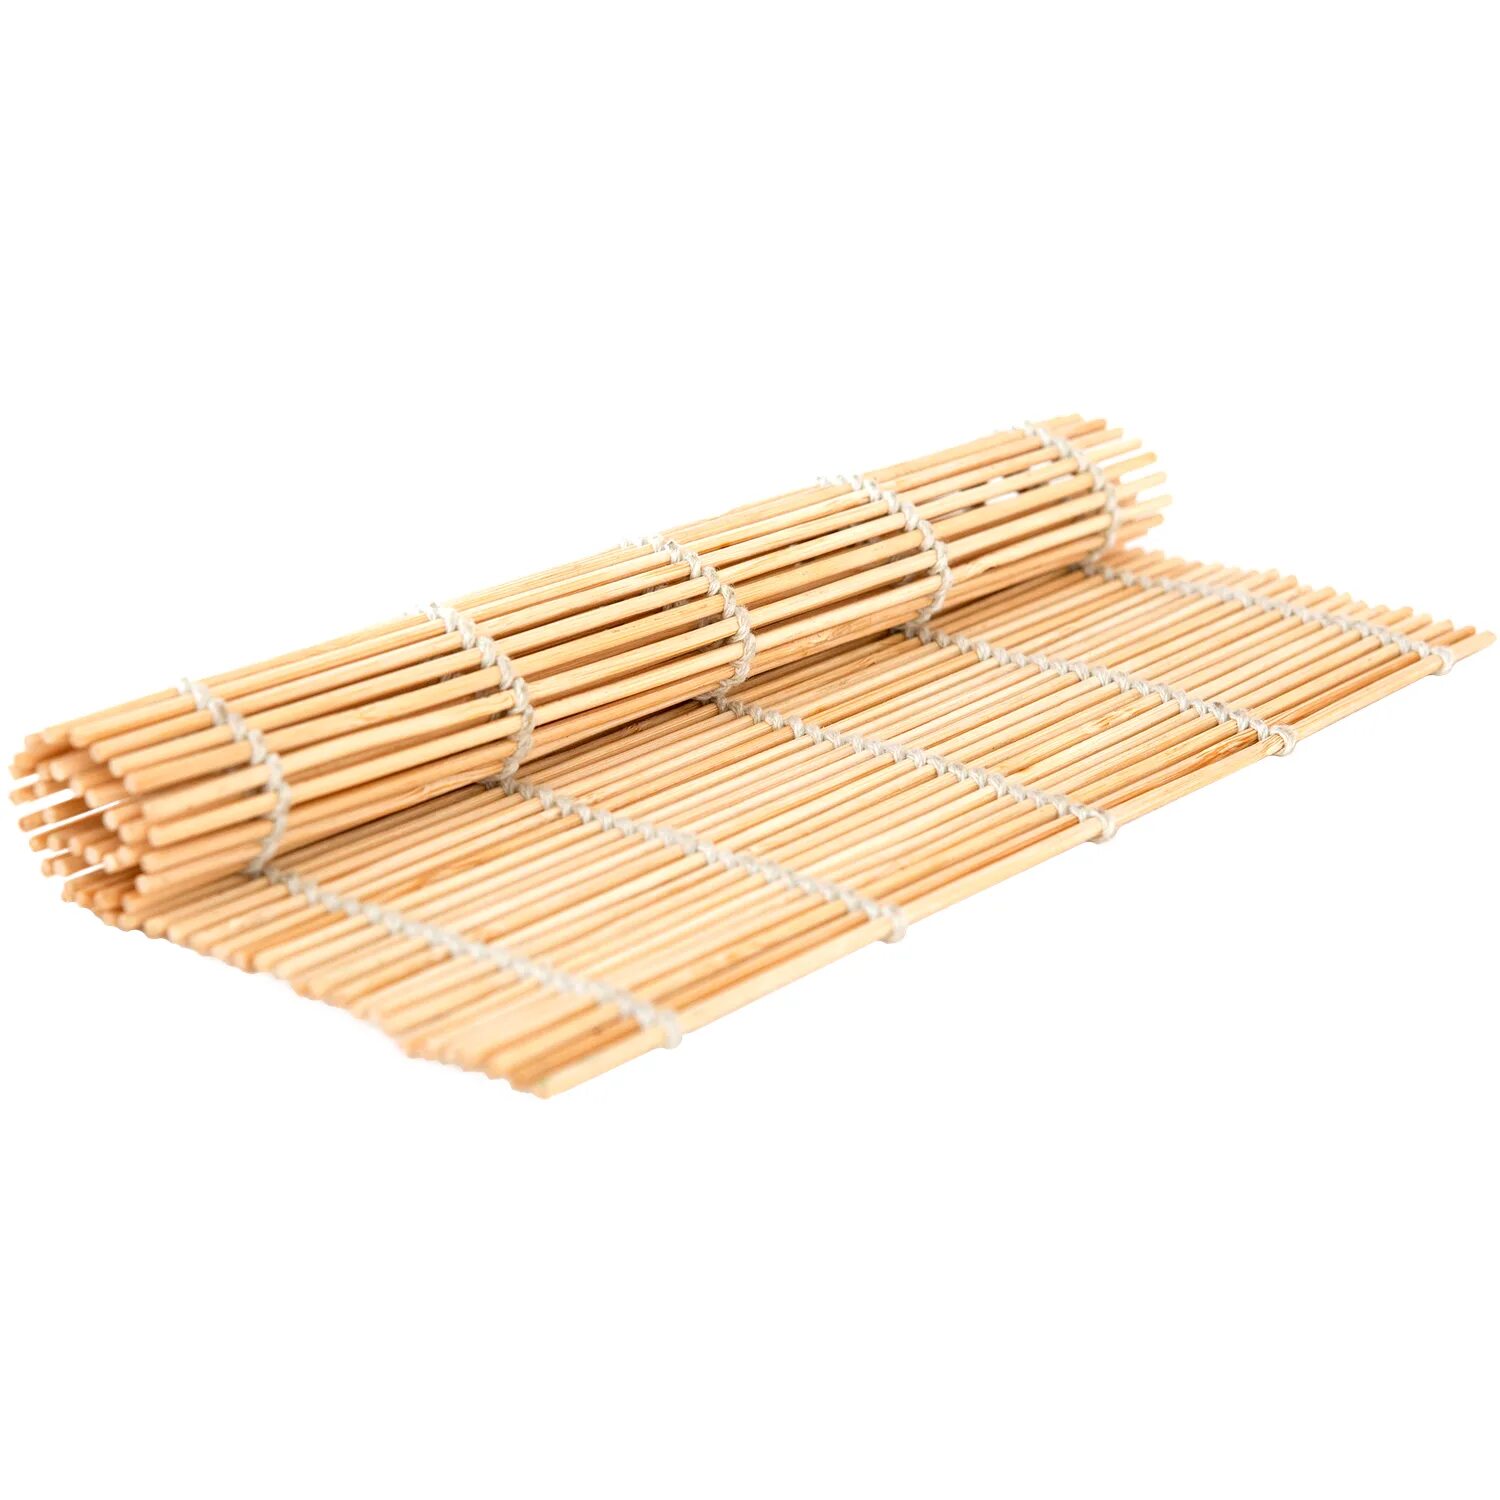 Bamboo rolls. Циновка бамбуковая (макису), l24см b24см/200/1. Циновка для роллов (макису) 27*27 см. Макиса бамбуковая. Бамбуковая циновка.